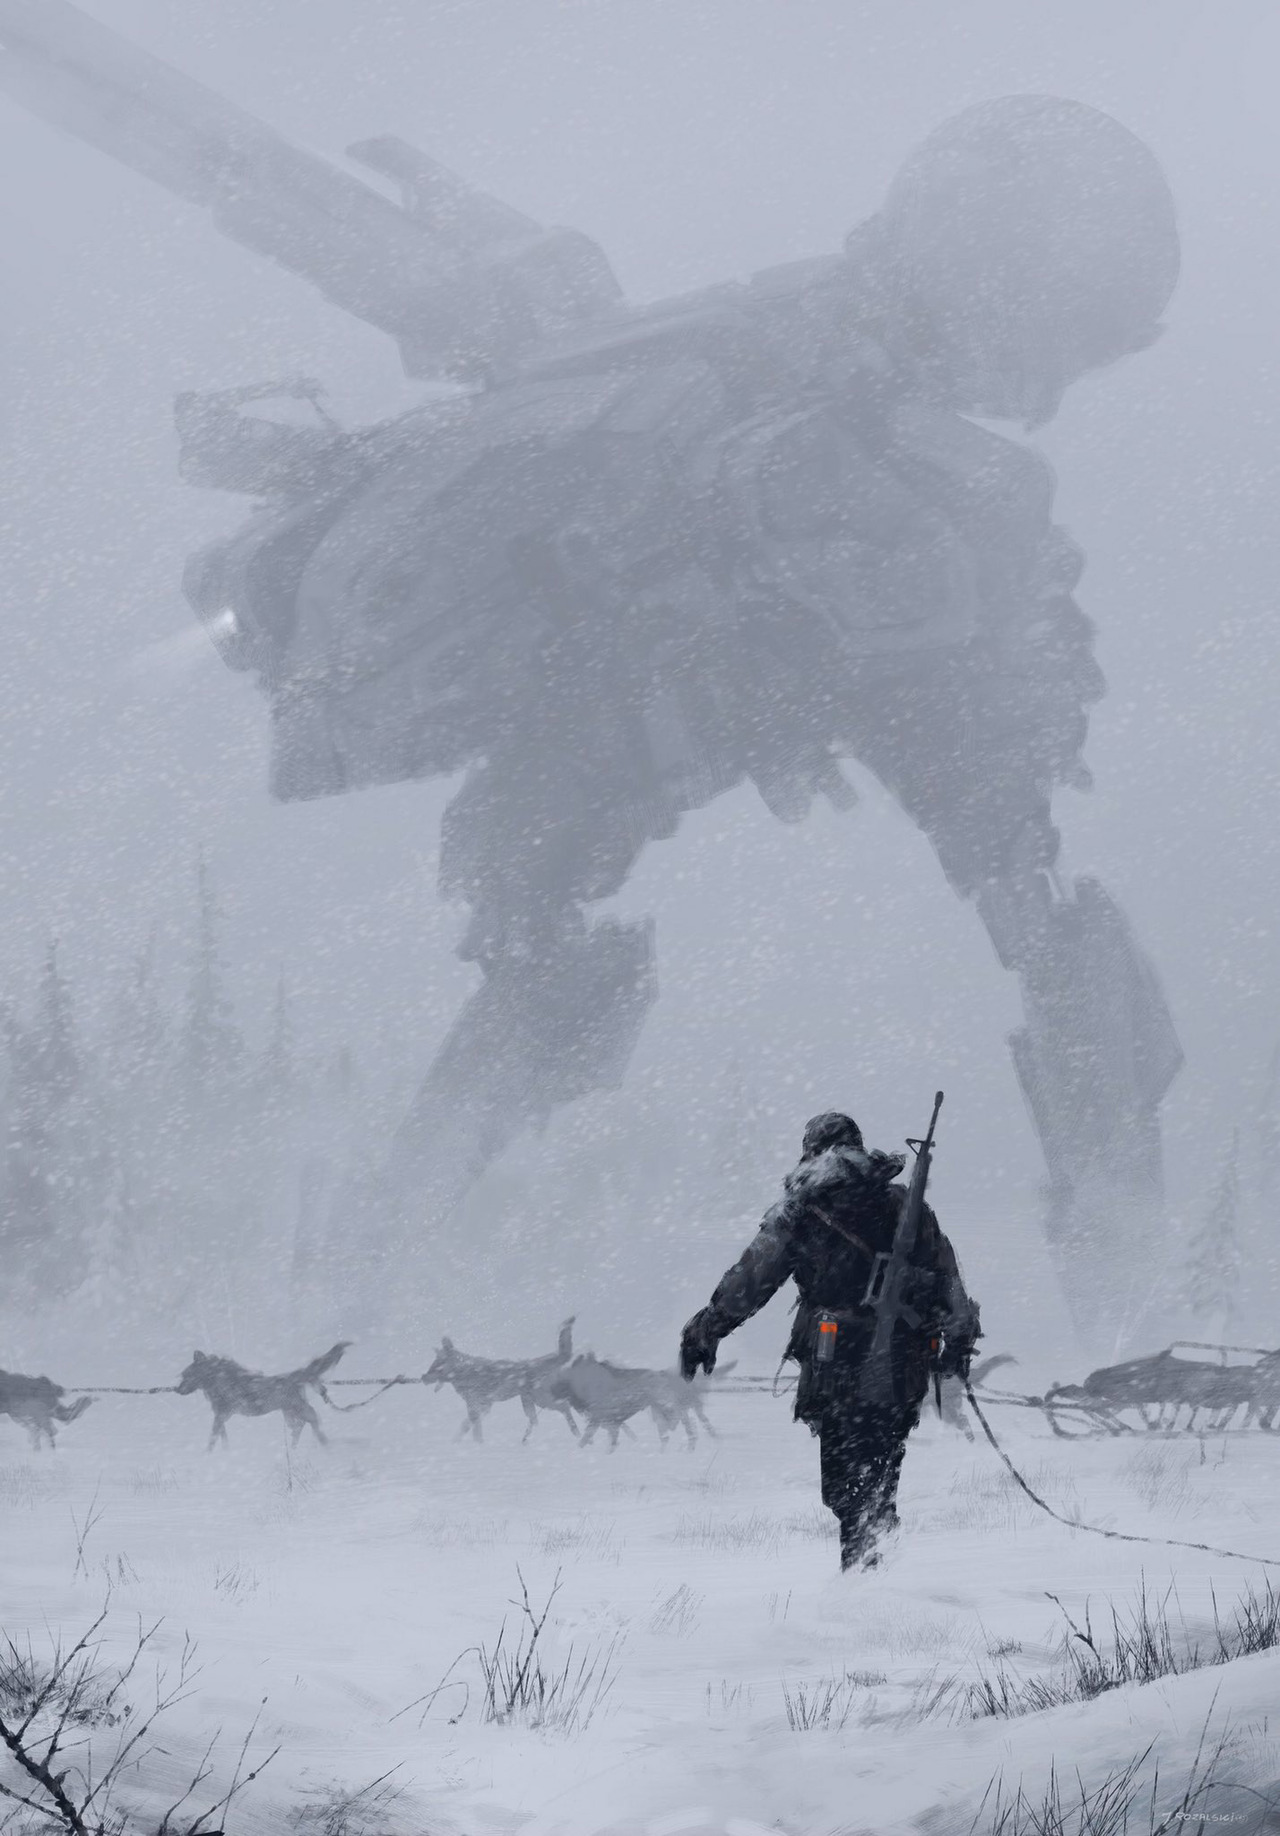 Vej Spaceship i tilfælde af Metal Gear Informer — Jordan Vogt-Roberts shares Metal Gear concept art...